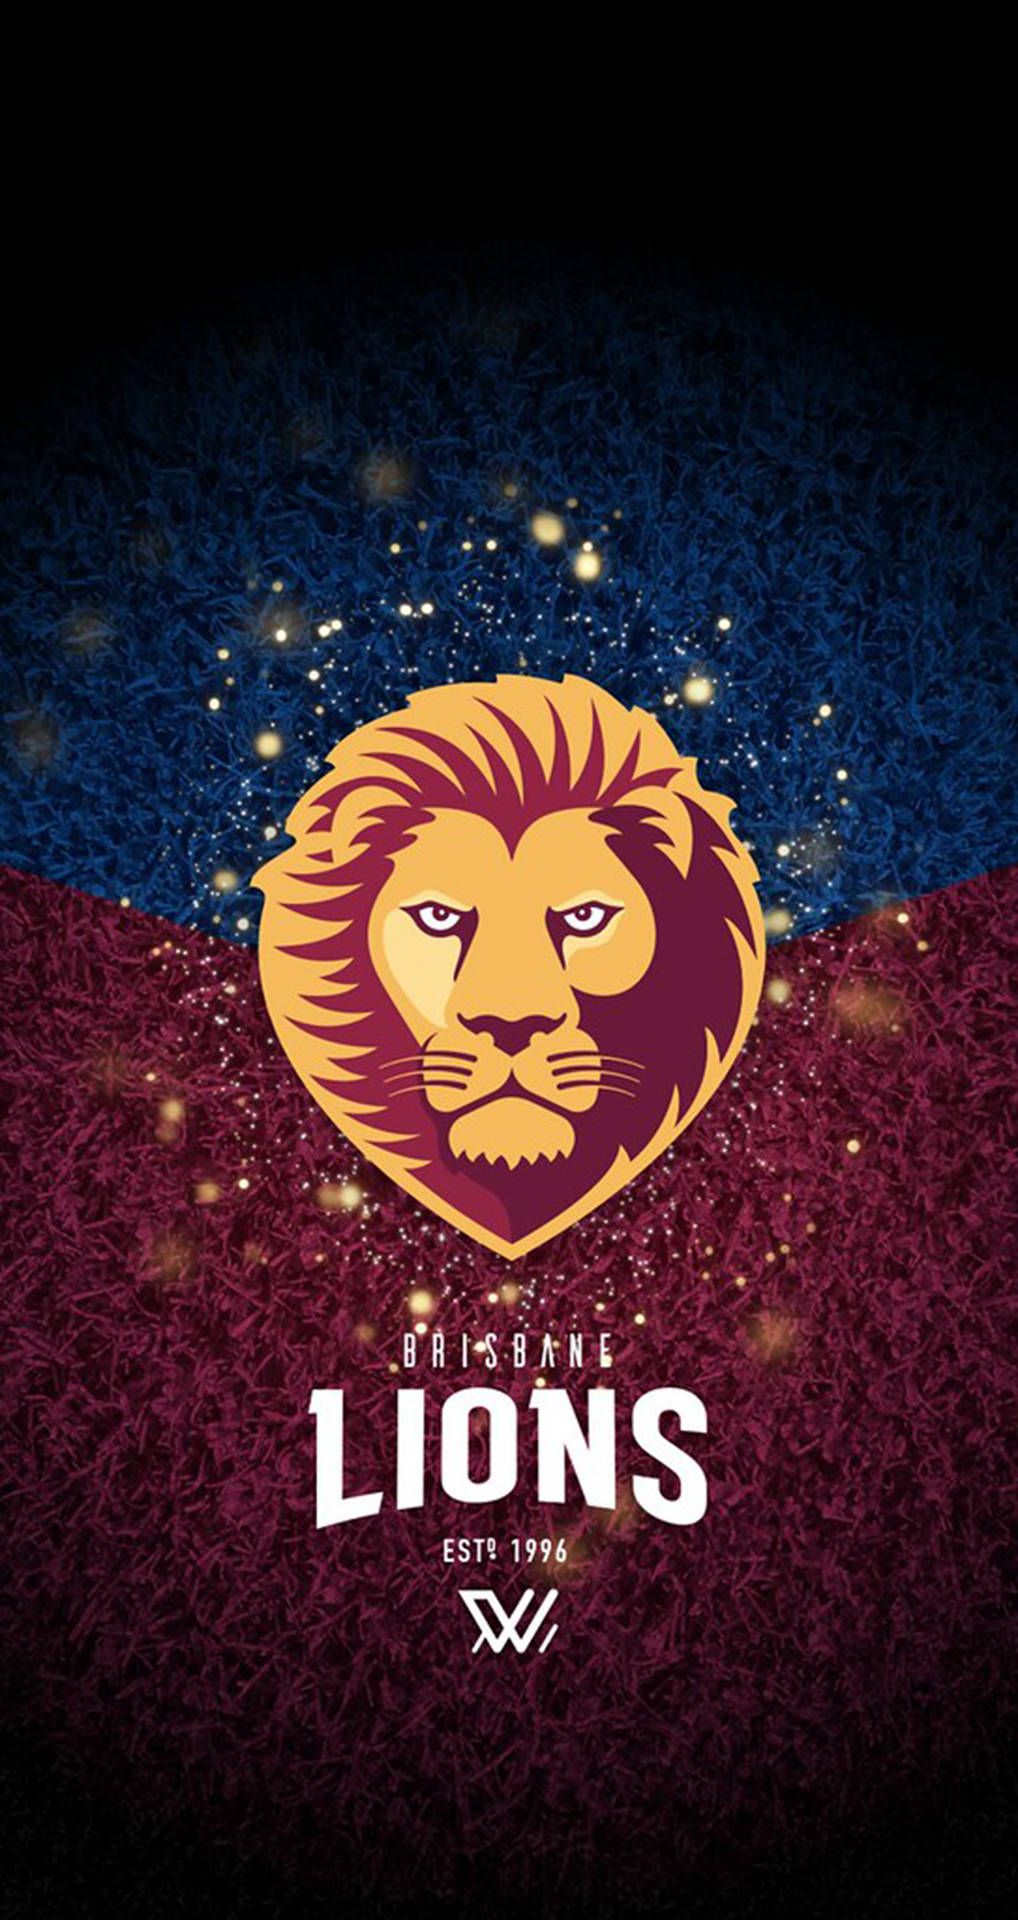 Afl Brisbane Lions Background